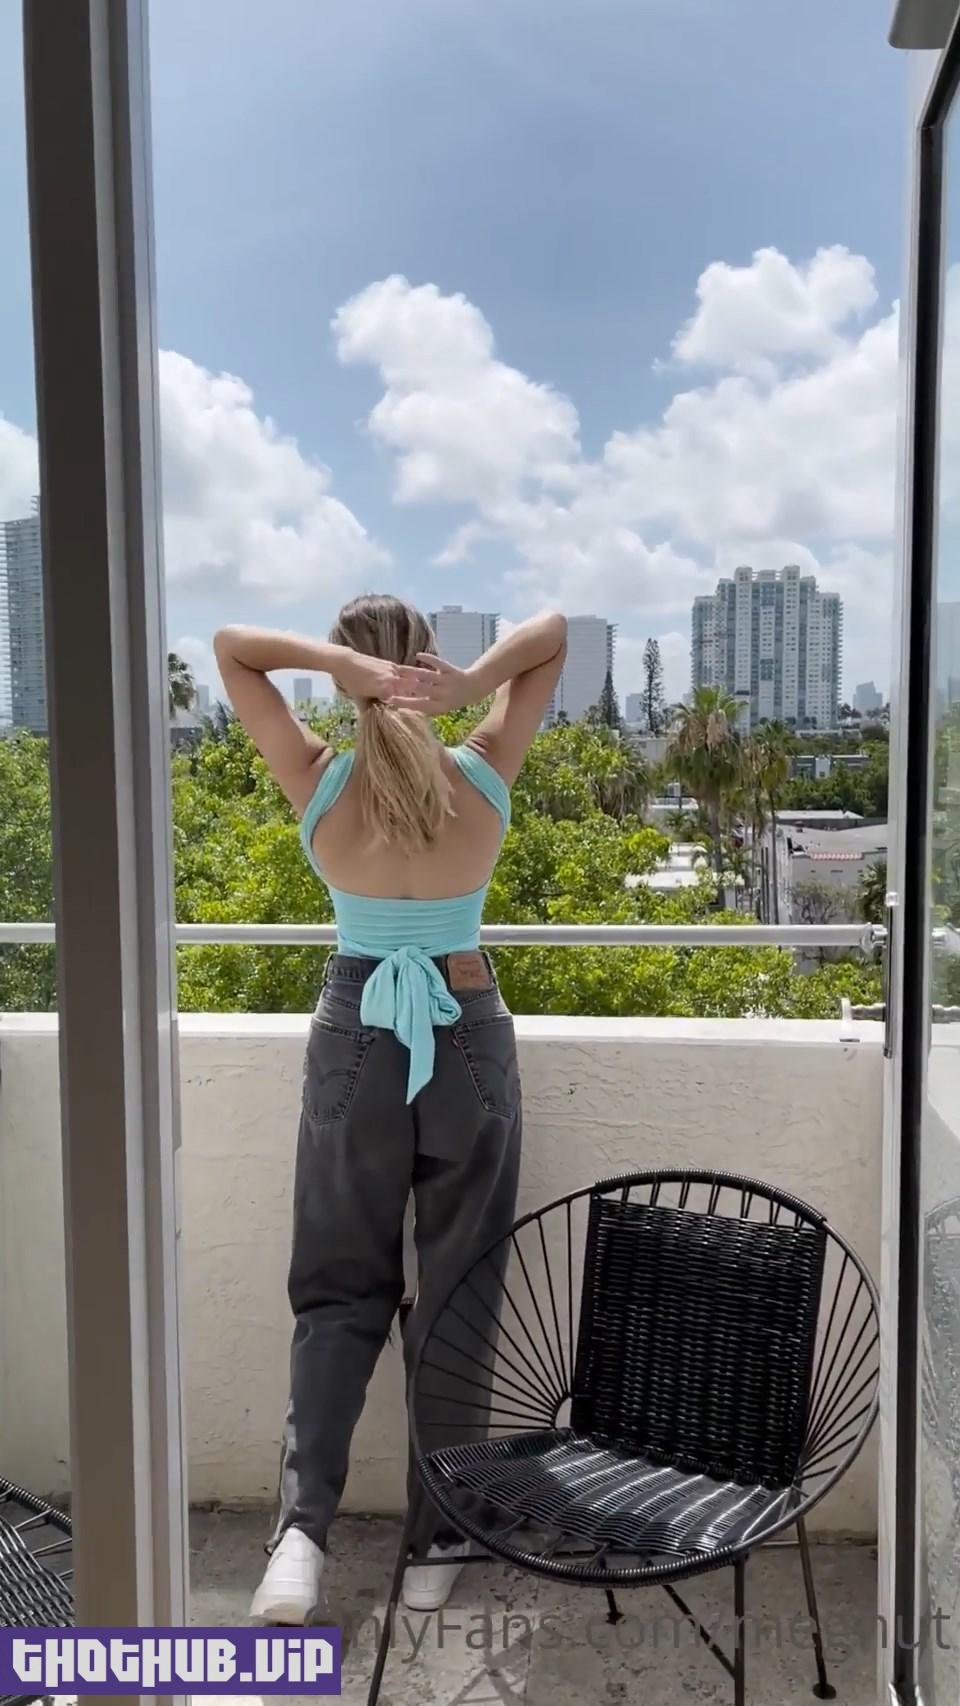 Megnutt02 Onlyfans Topless Balcony Video Leaked 5